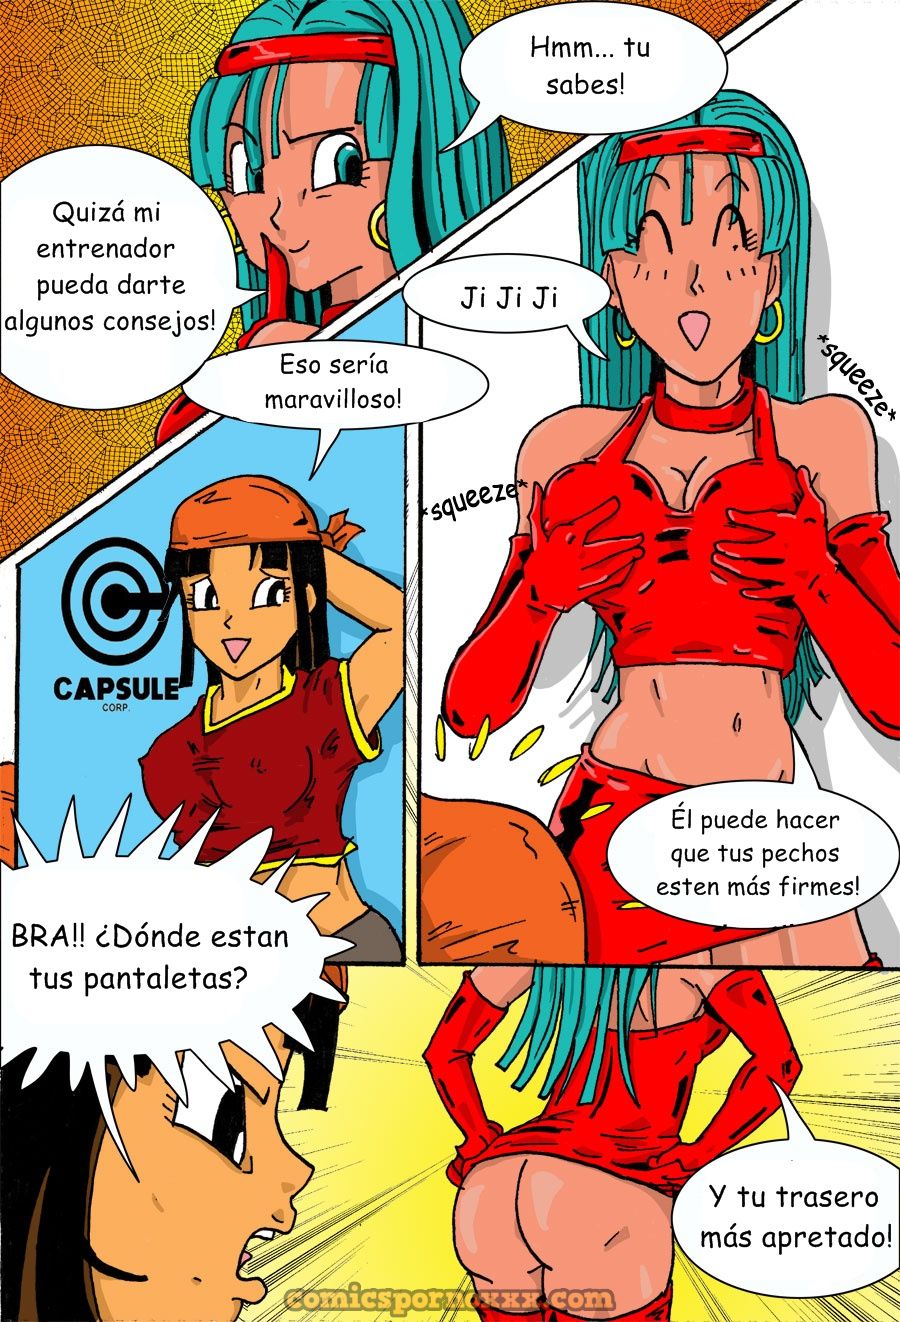 Pan and Bra - 2 - Comics Porno - Hentai Manga - Cartoon XXX